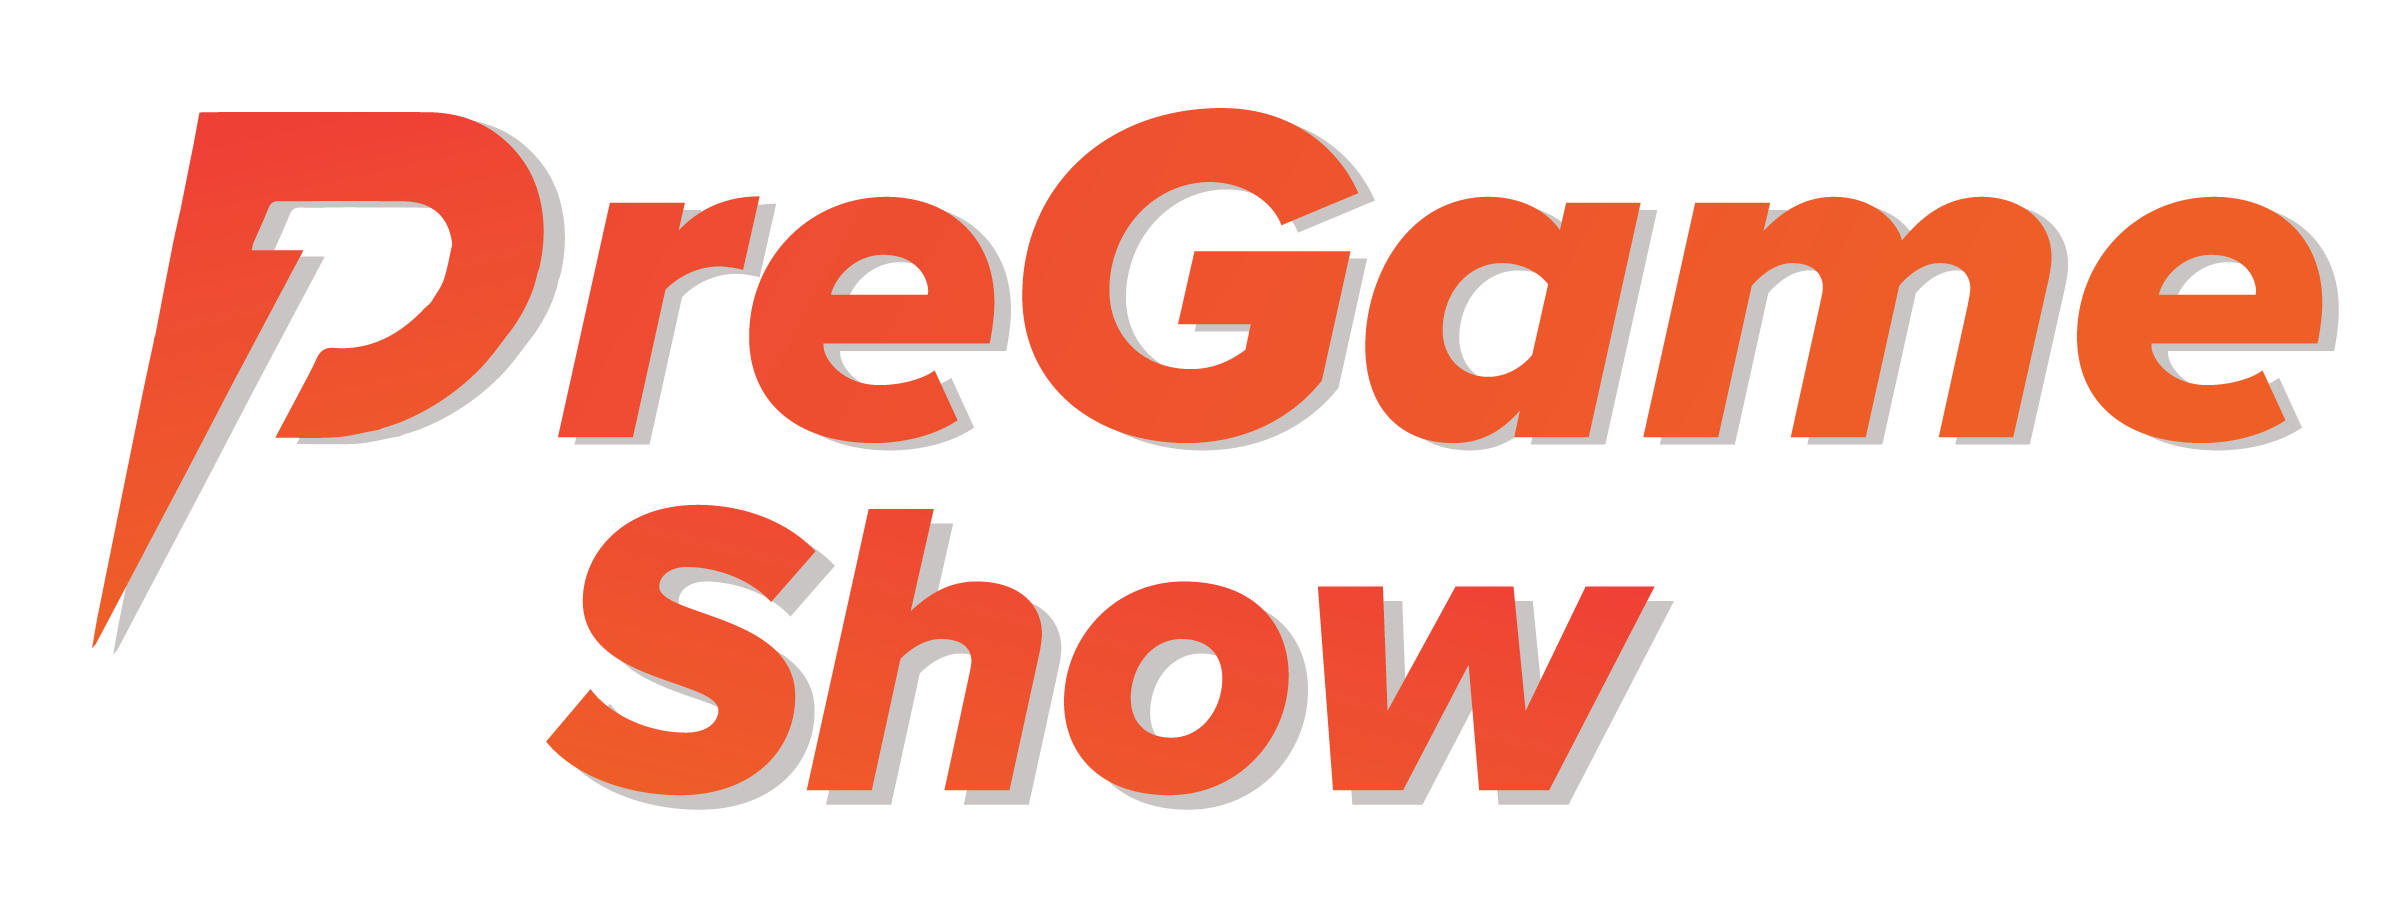 Pregame Show logo